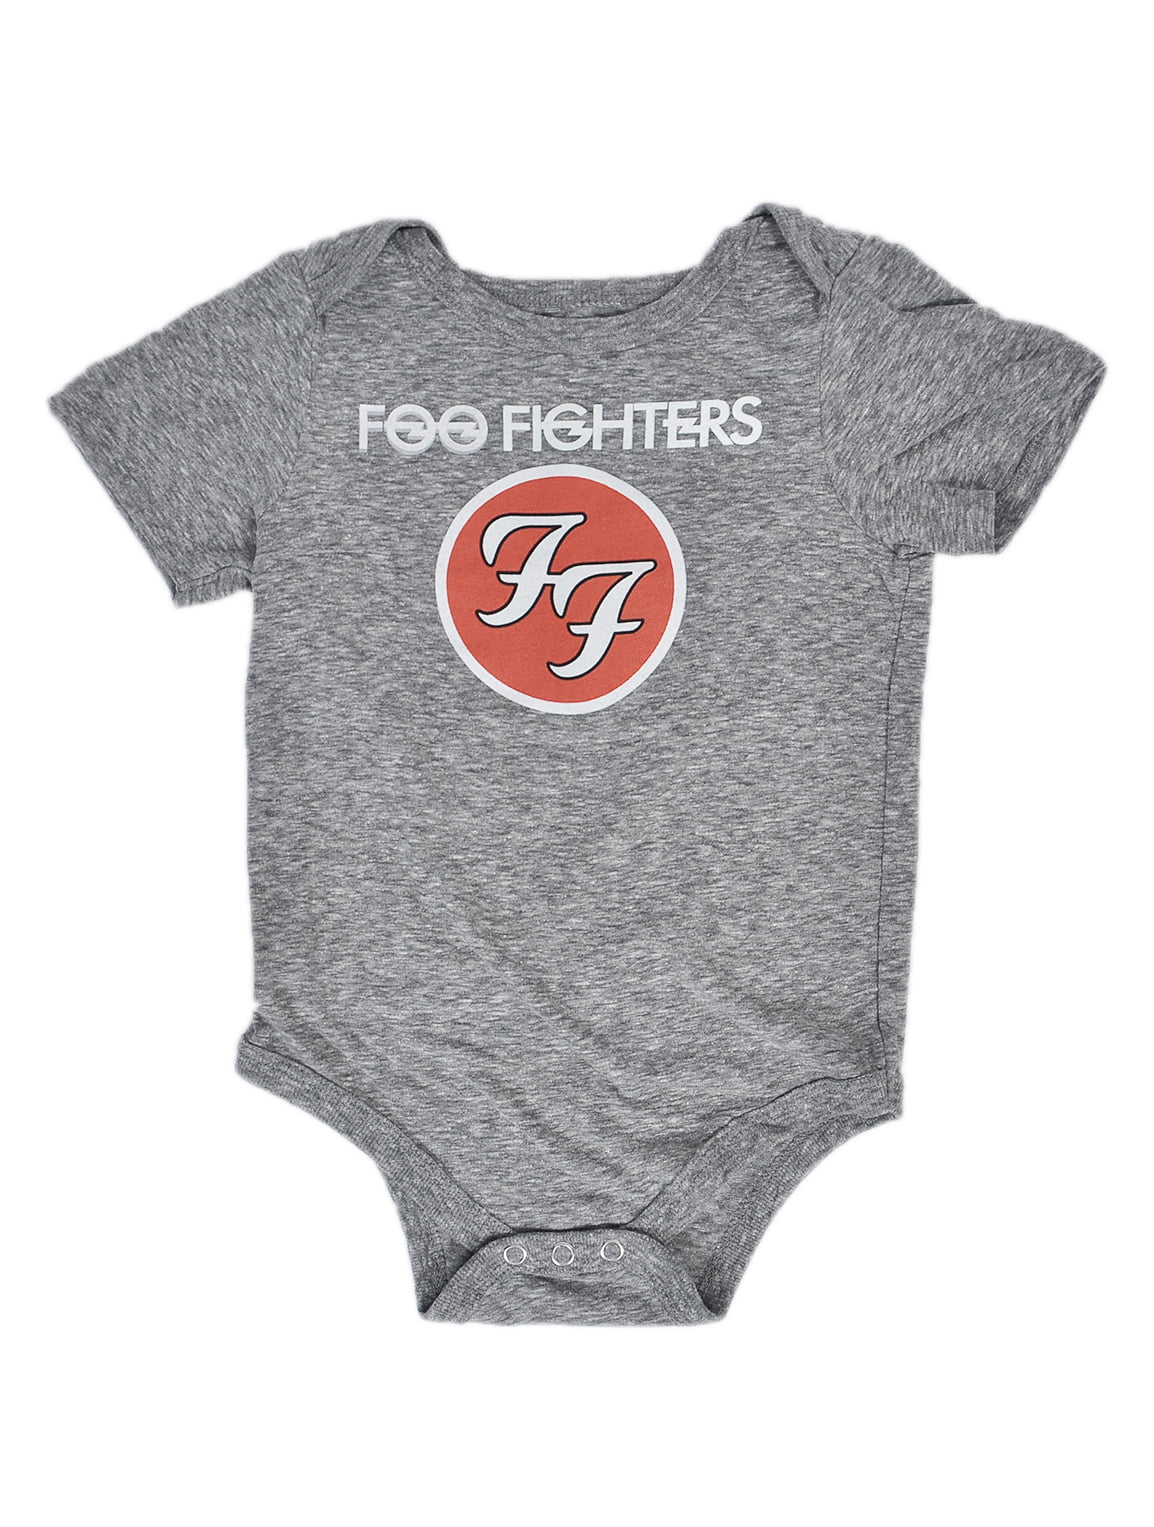 foo fighters baby onesie